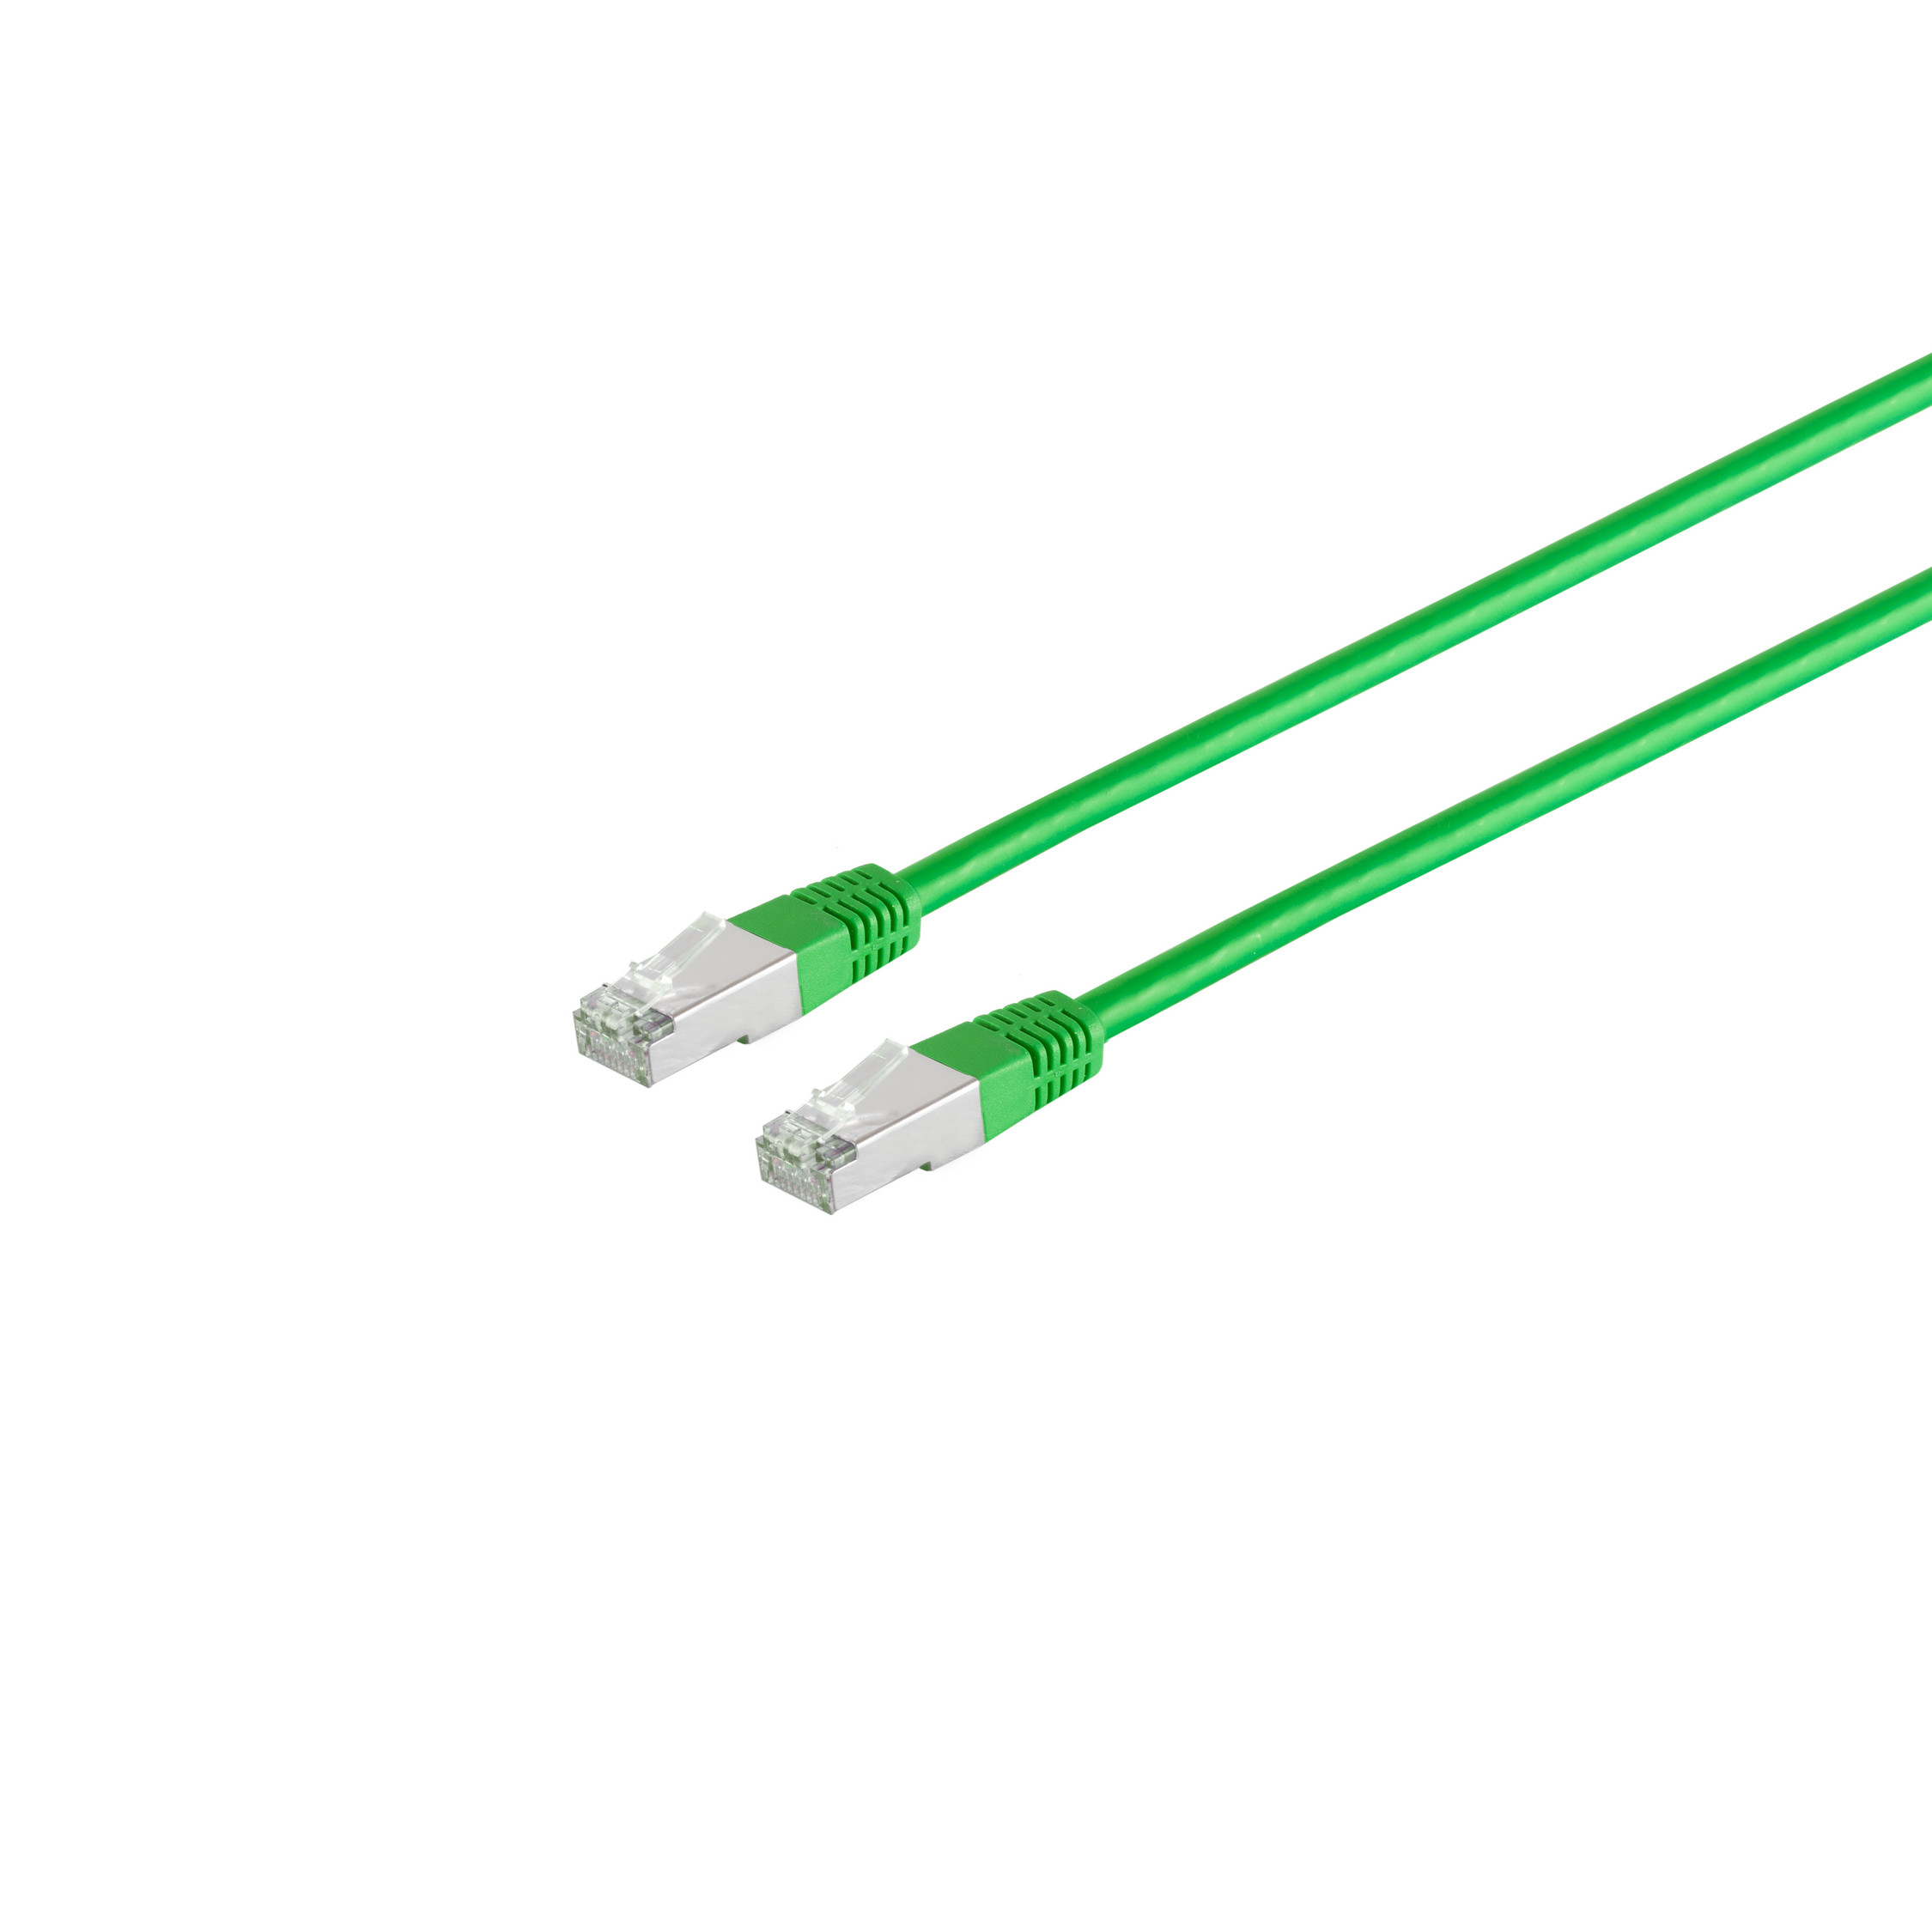 S/CONN 6 S/FTP CONNECTIVITY MAXIMUM grün m 20m, 20 cat Halogenfrei Patchkabel PIMF RJ45, Patchkabel